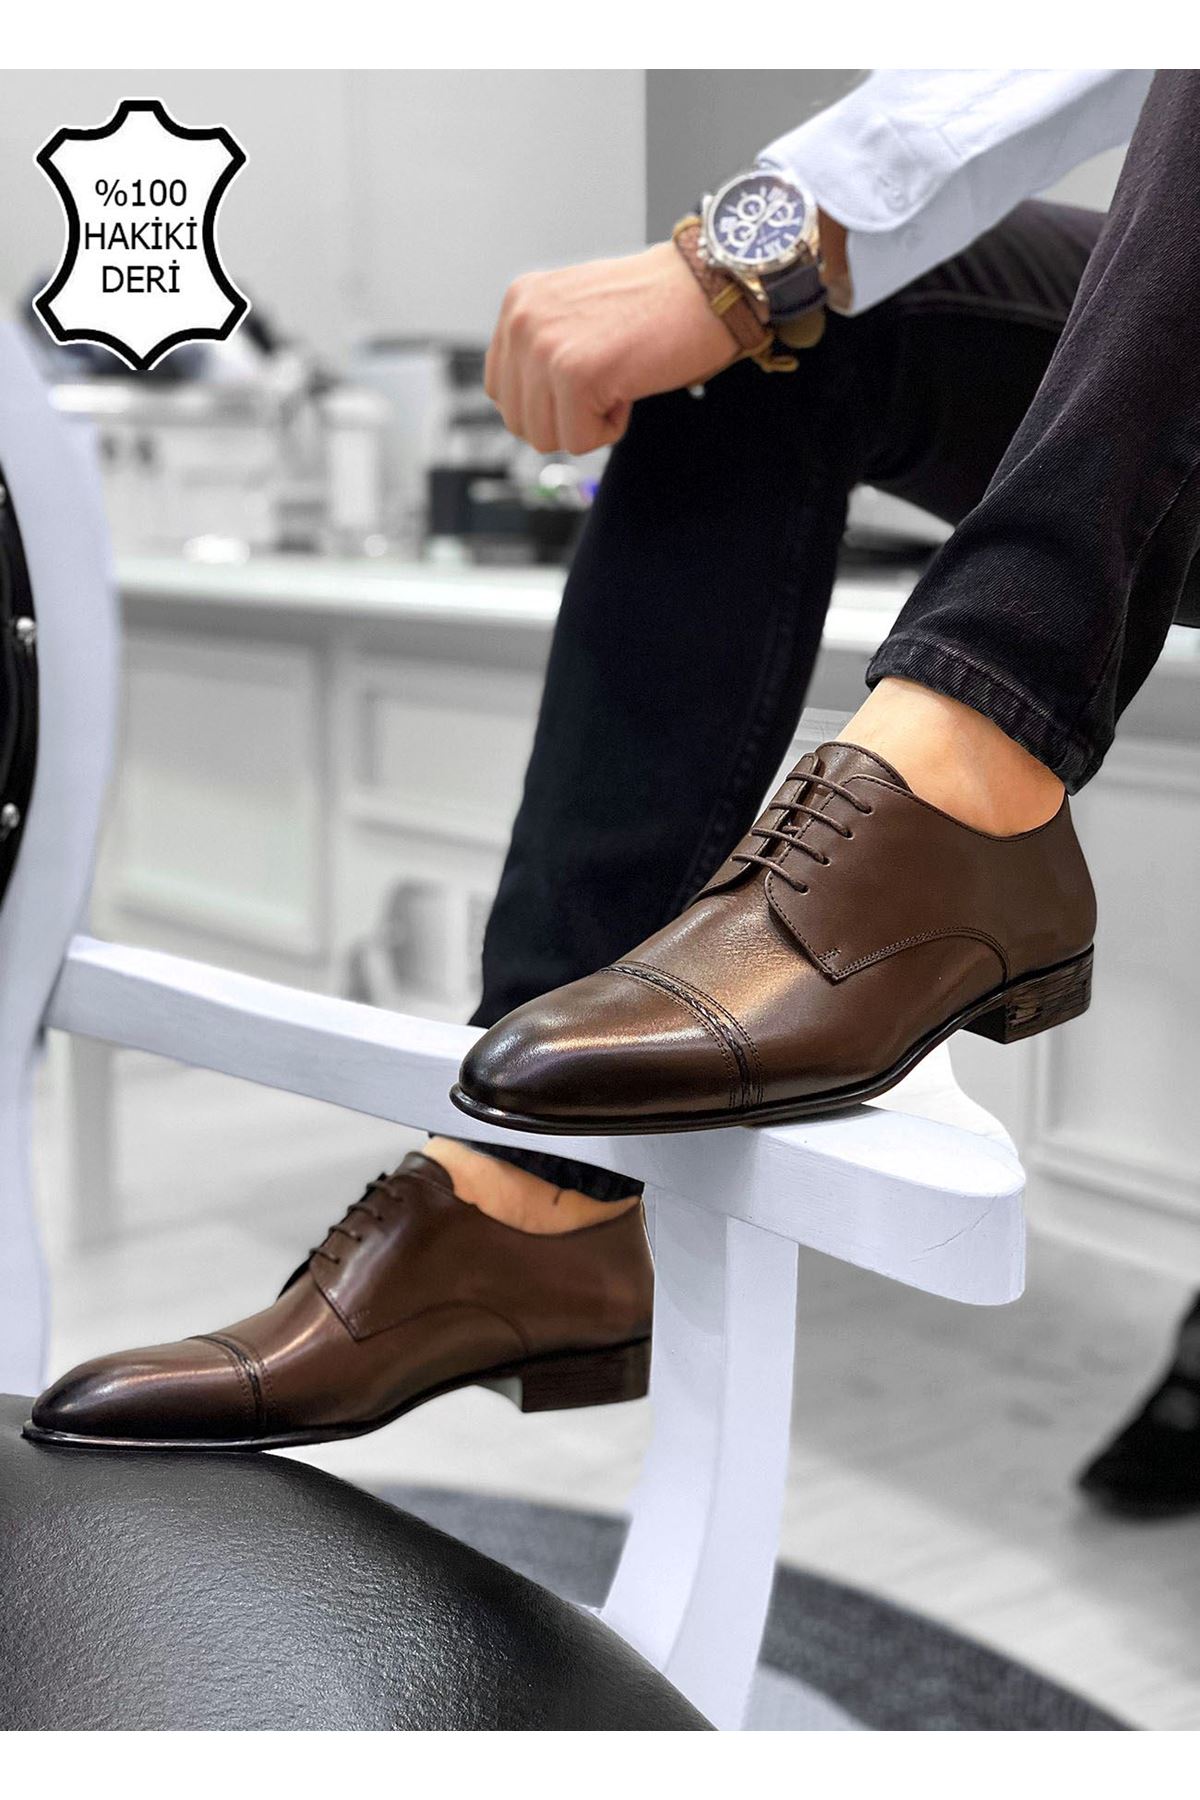 Boy Uzatan Gizli Topuk Kahve Örgülü İtalyan Hakiki Deri Erkek Klasik Ayakkabı